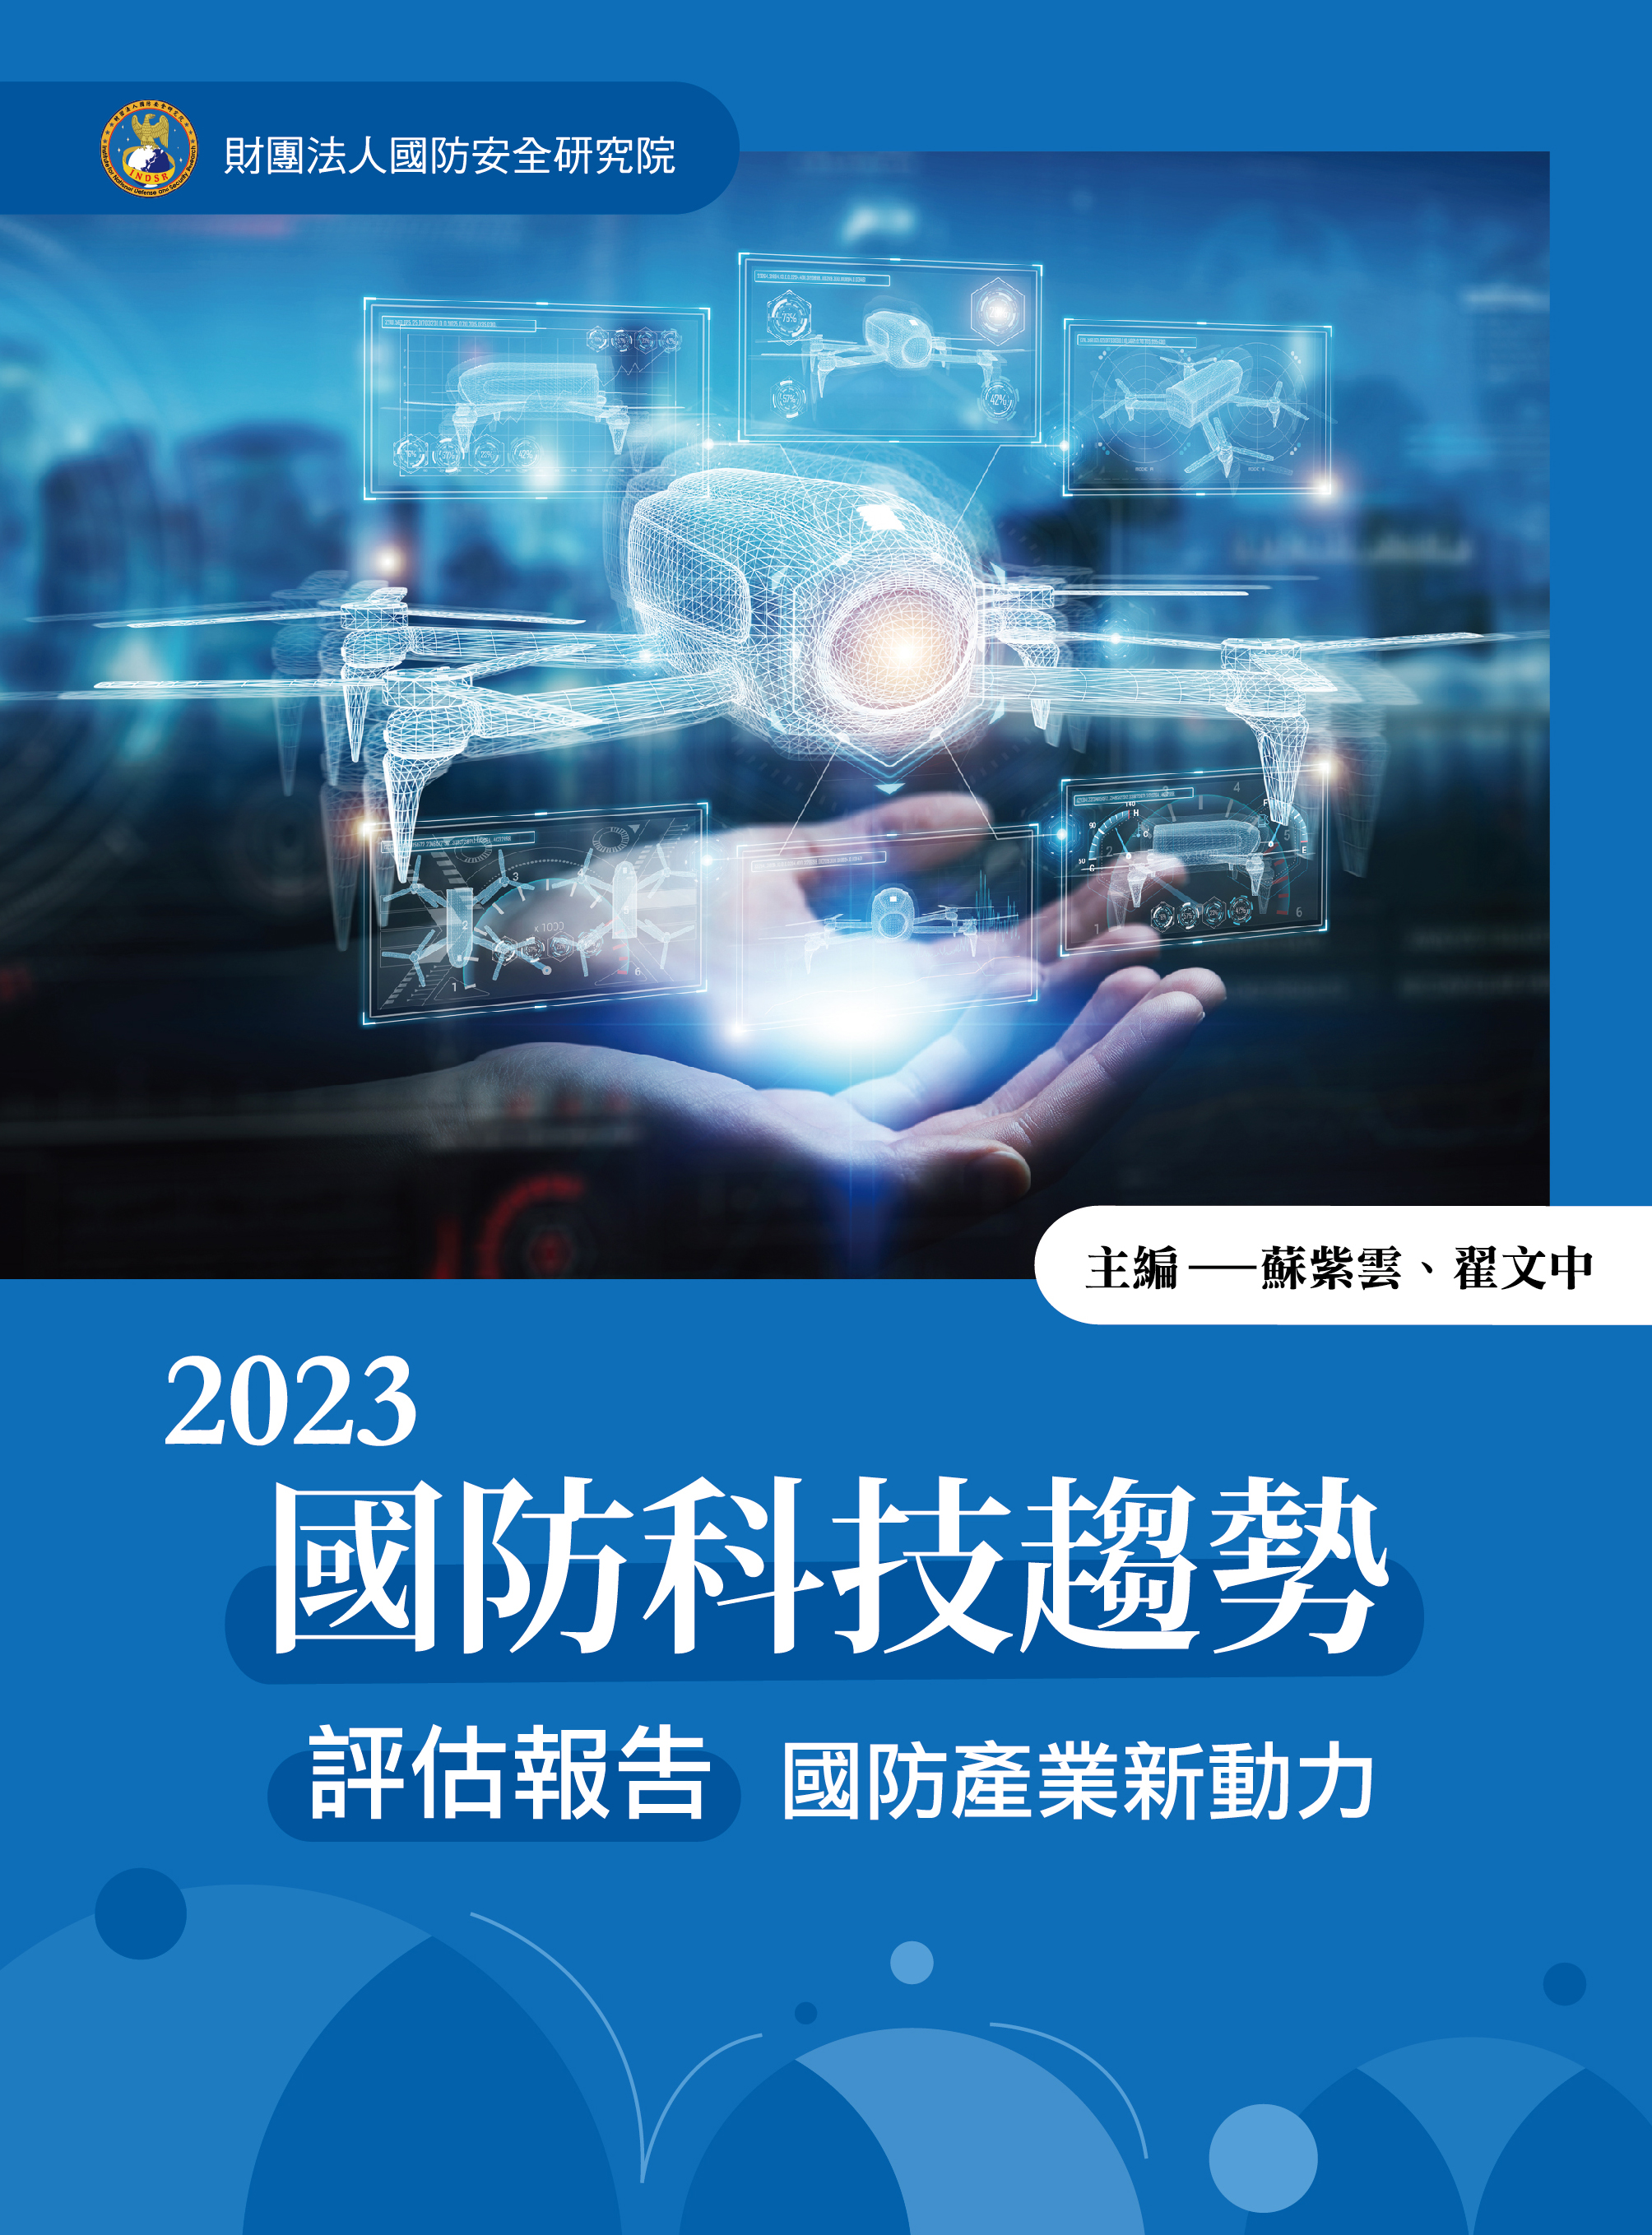 2023國防科技趨勢評估報告─國防產業新動力(正)